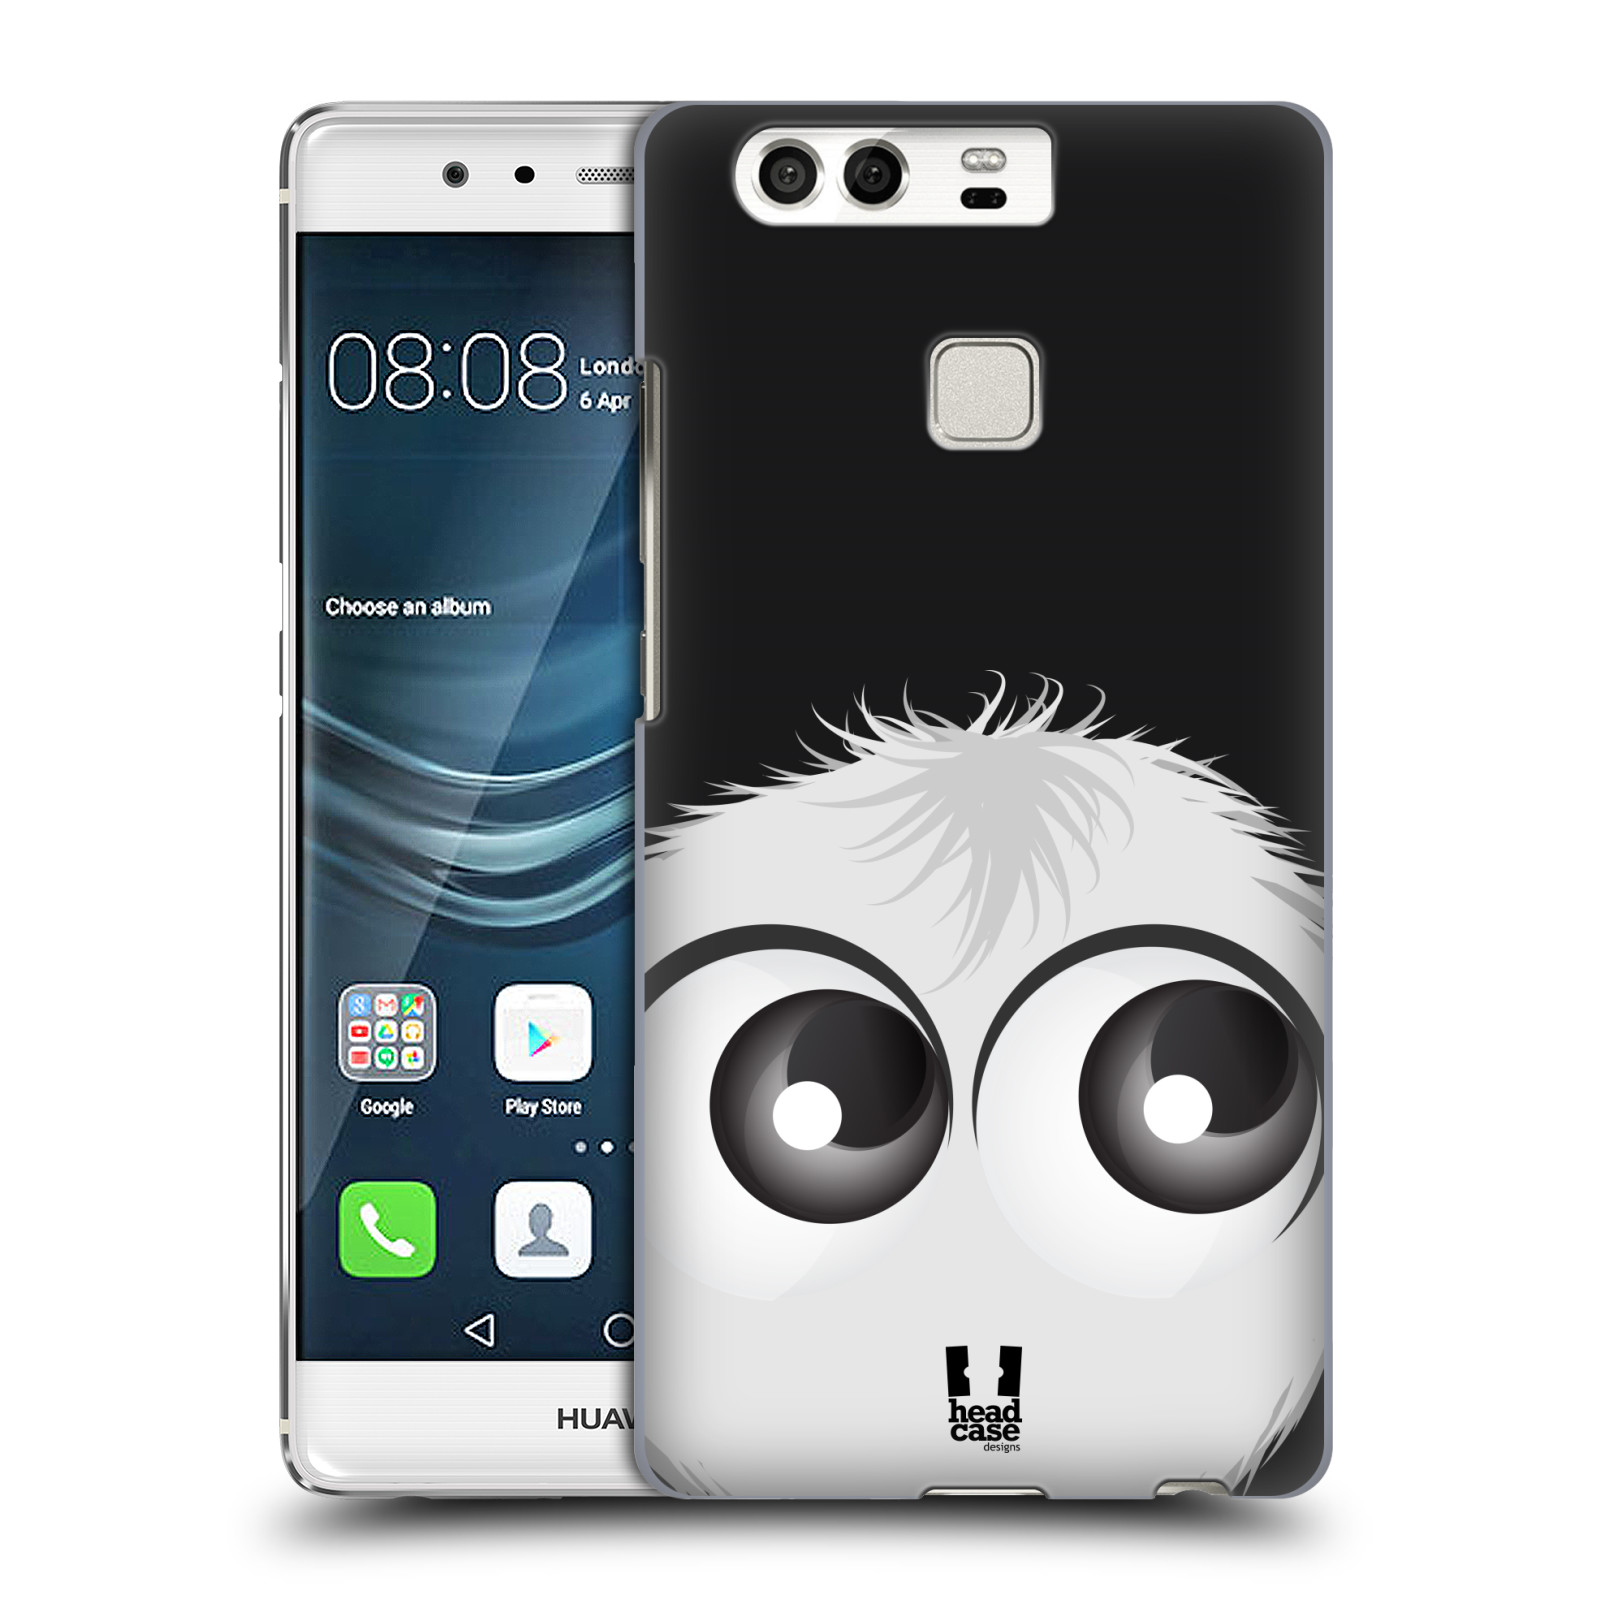 HEAD CASE plastový obal na mobil Huawei P9 / P9 DUAL SIM vzor Barevný chlupatý smajlík BÍLÁ černé pozadí